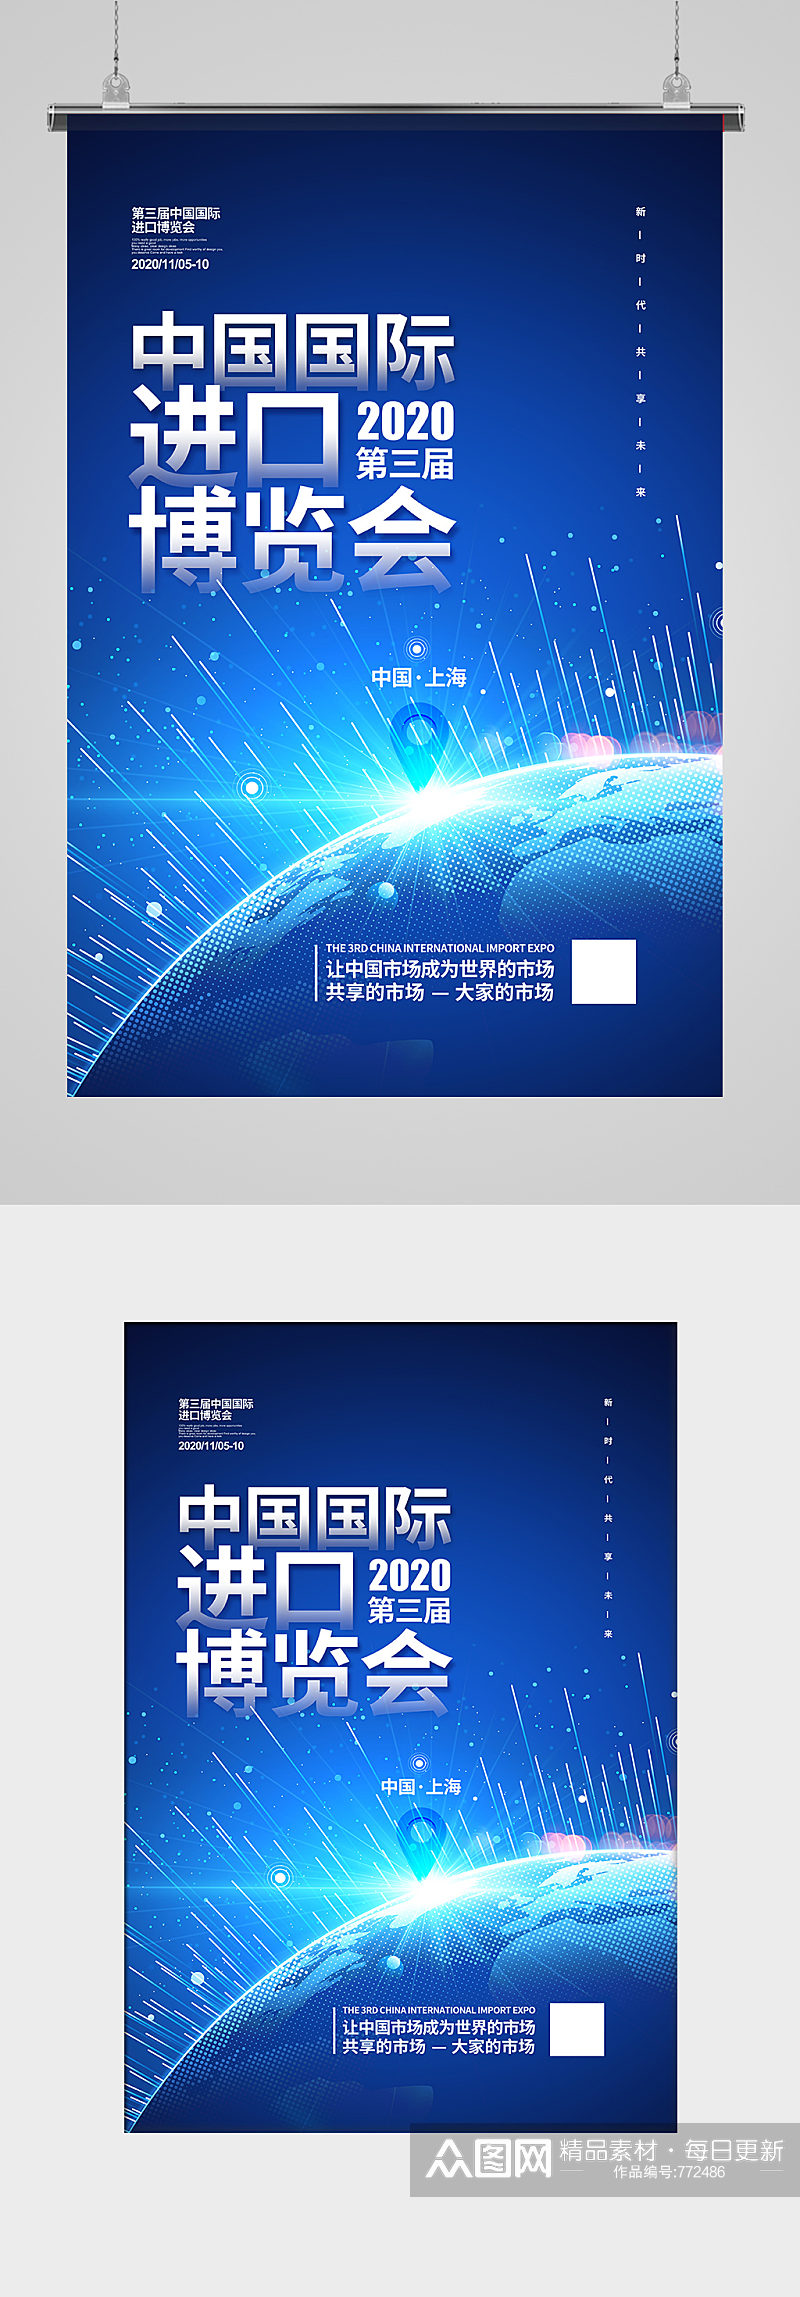 第三届中国国际进口博览会宣传海报设计素材